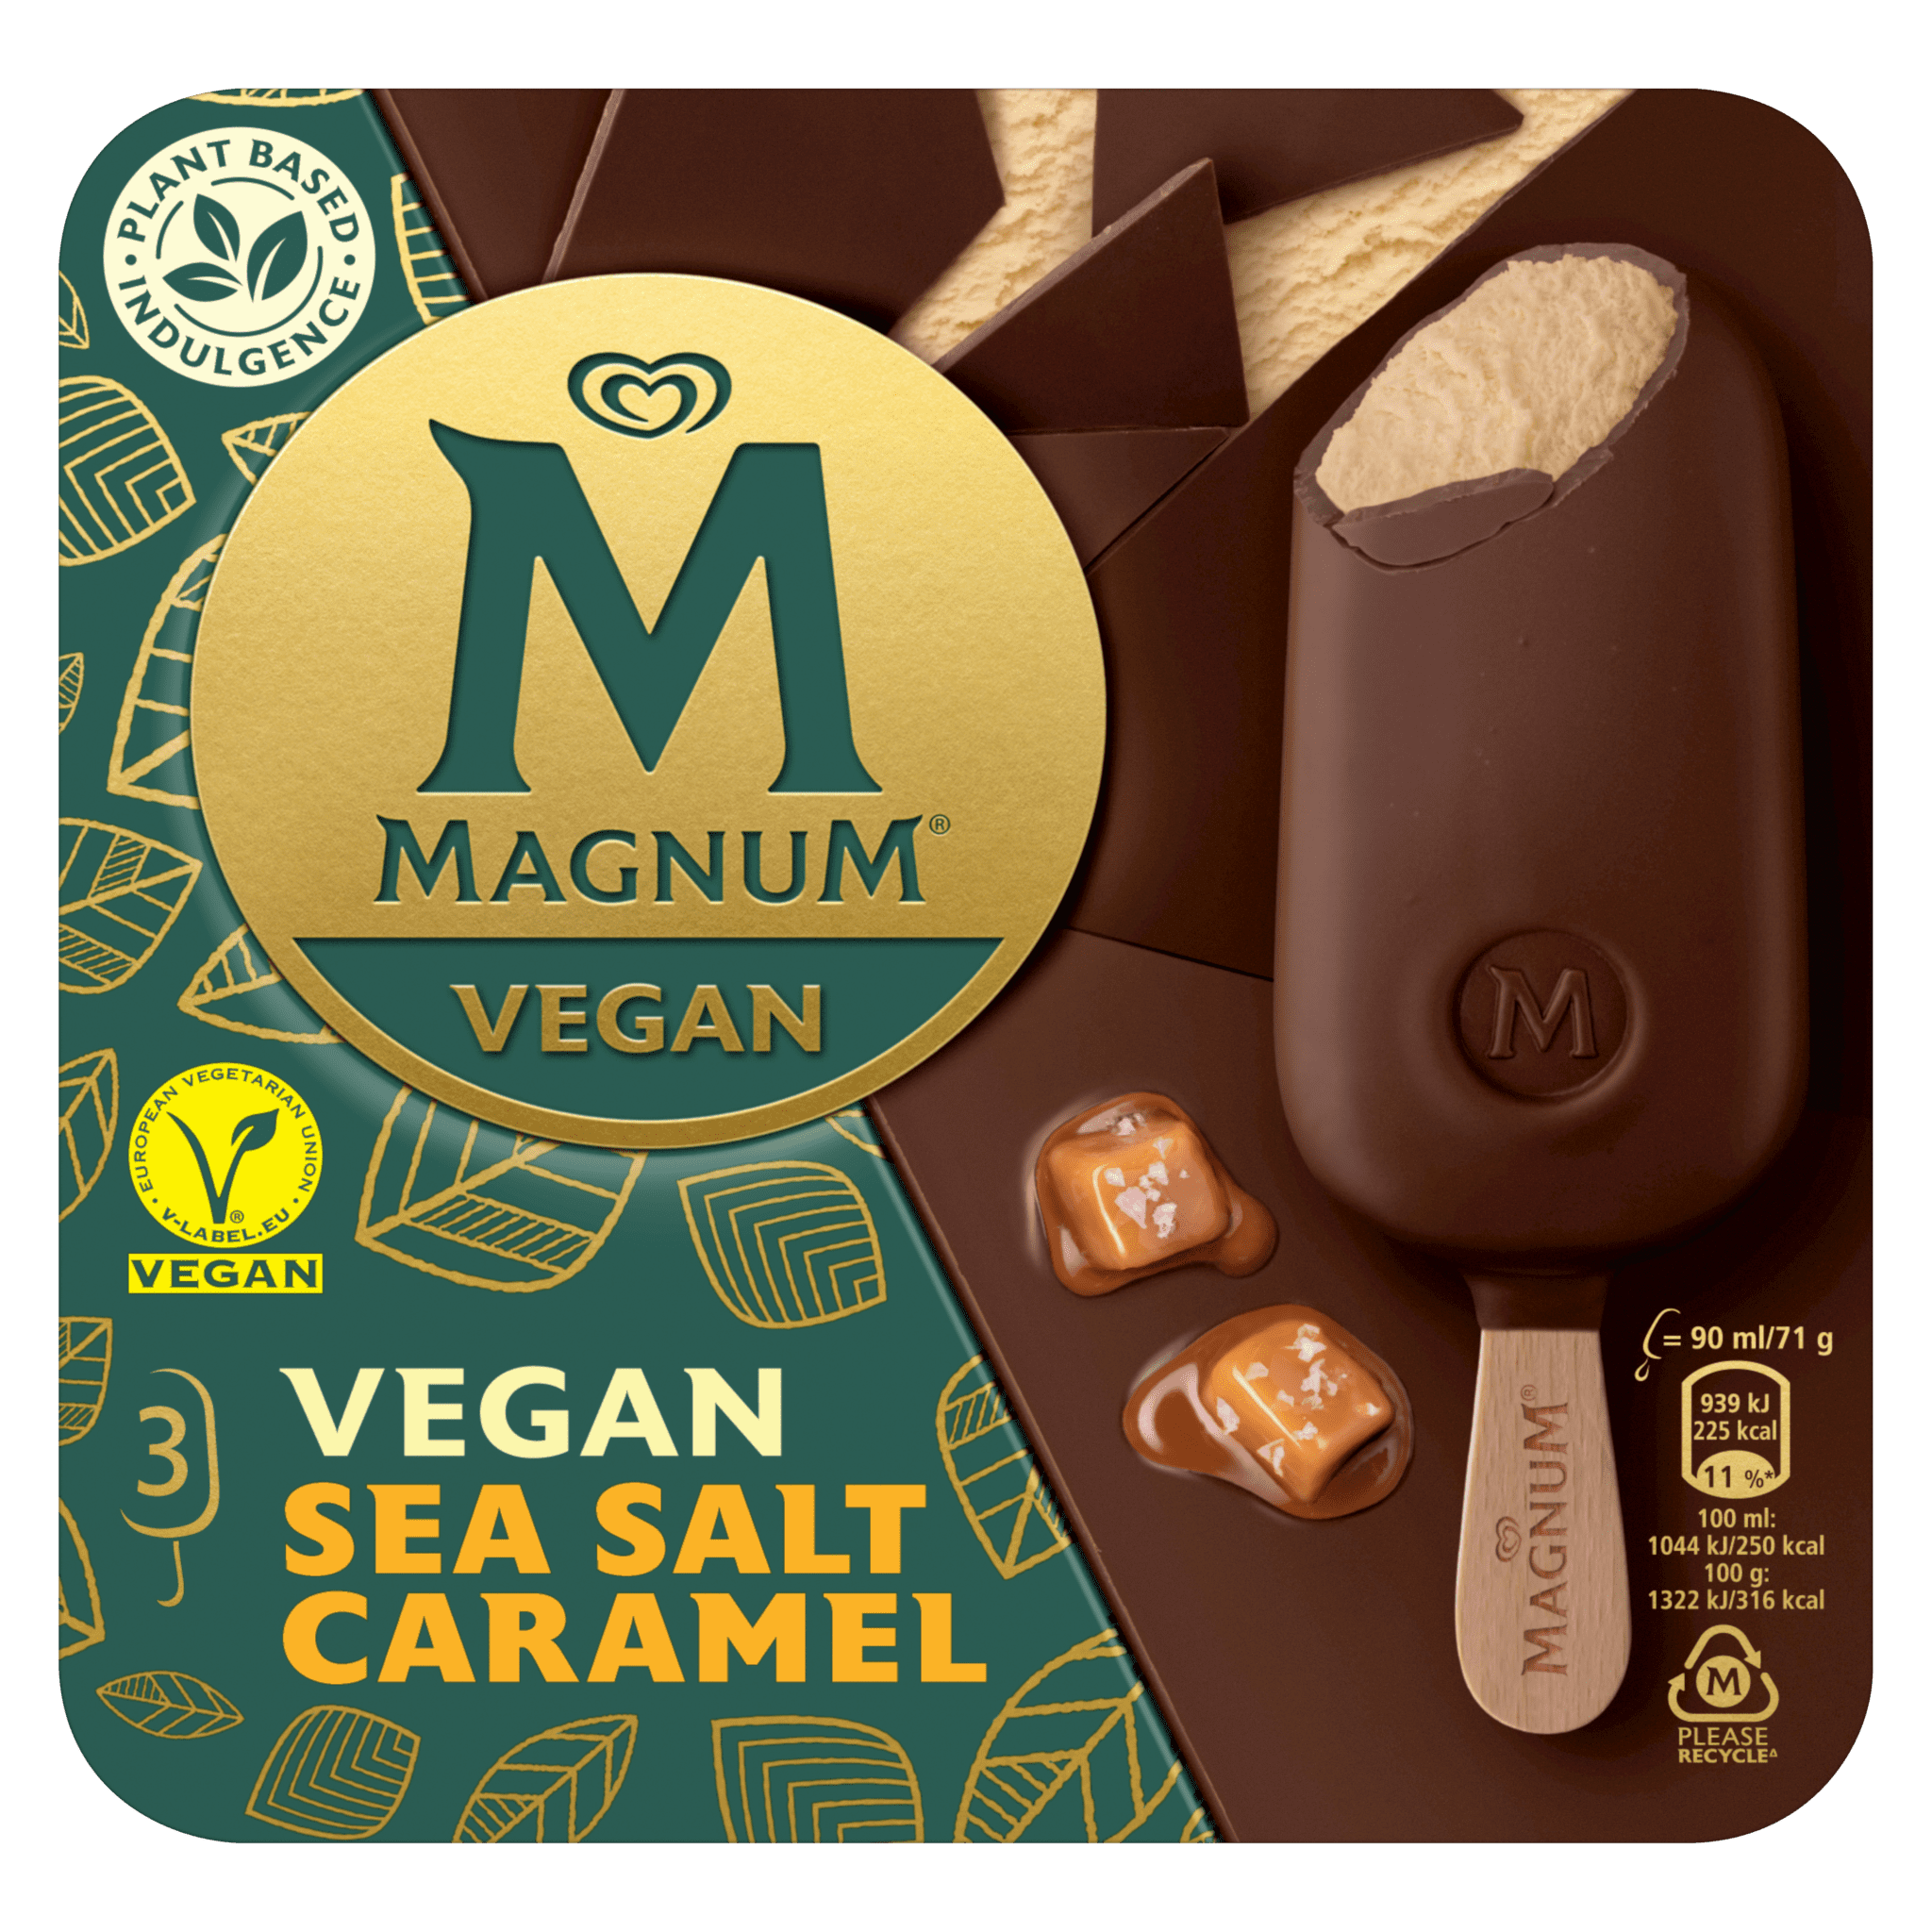 Magnum Vegan Sea Salt & Caramel Hpk 3 stk. -10 ein. í pk.